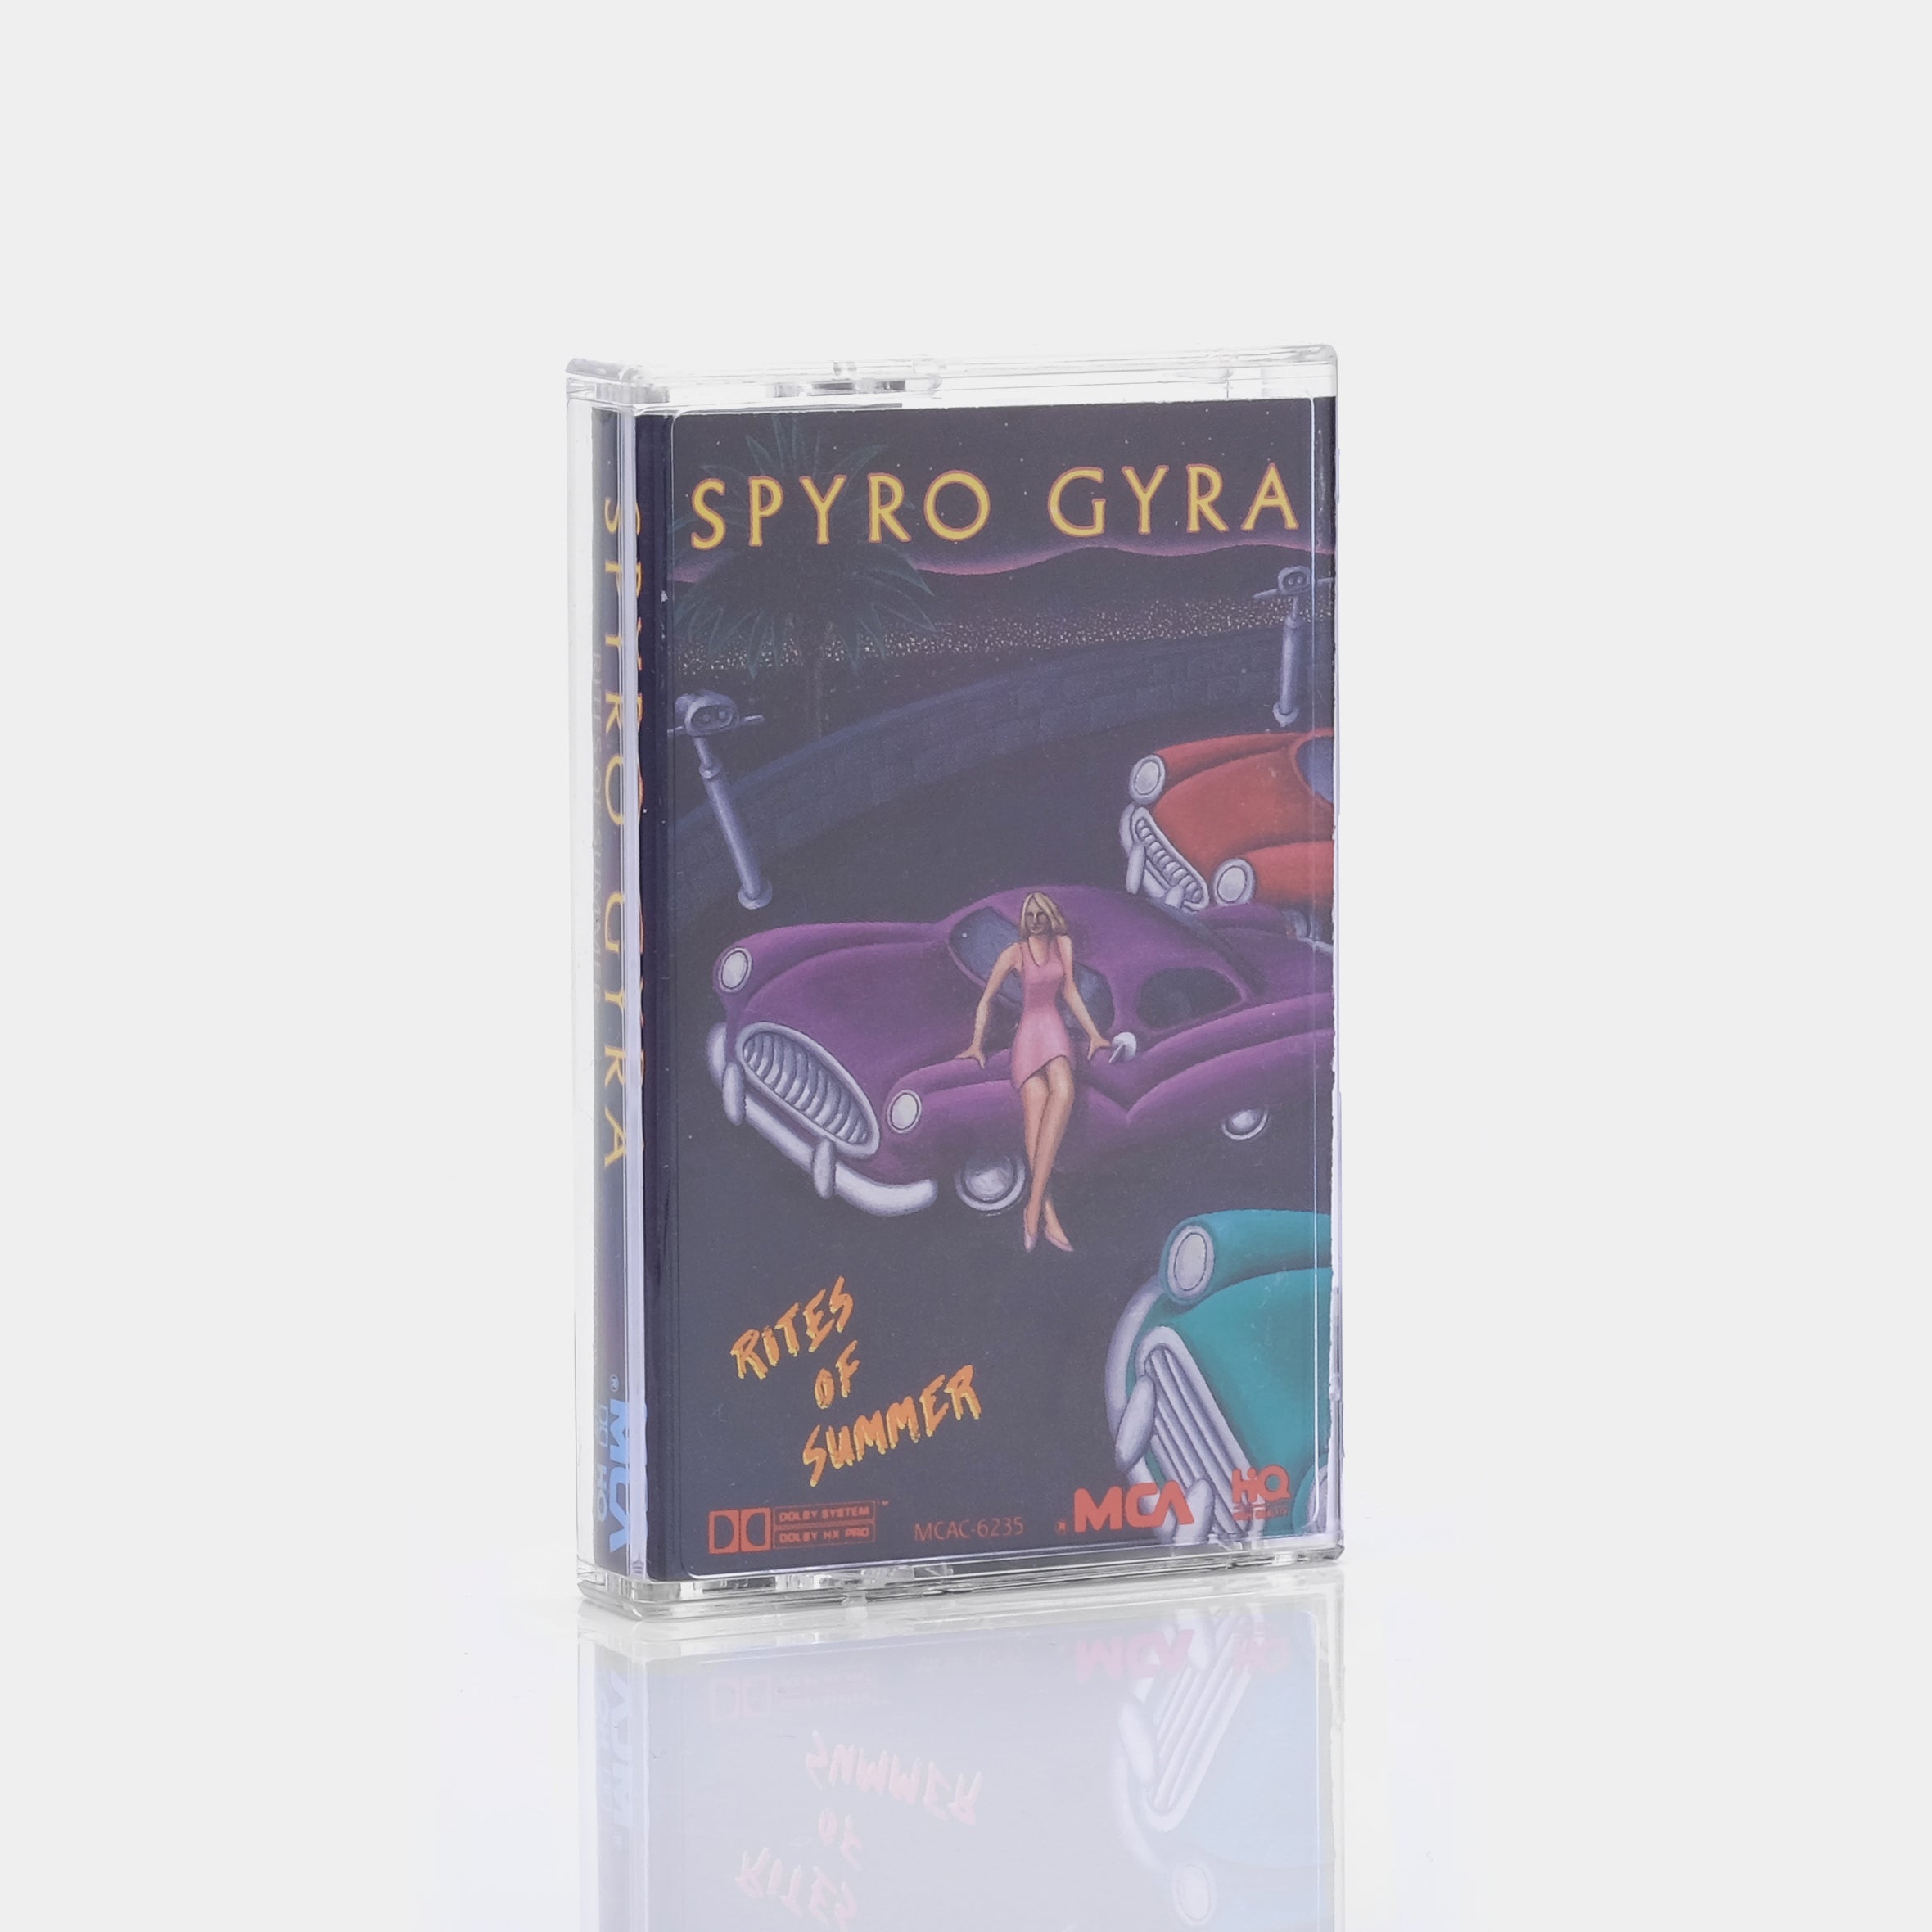 Spyro Gyra - Rites Of Summer Cassette Tape